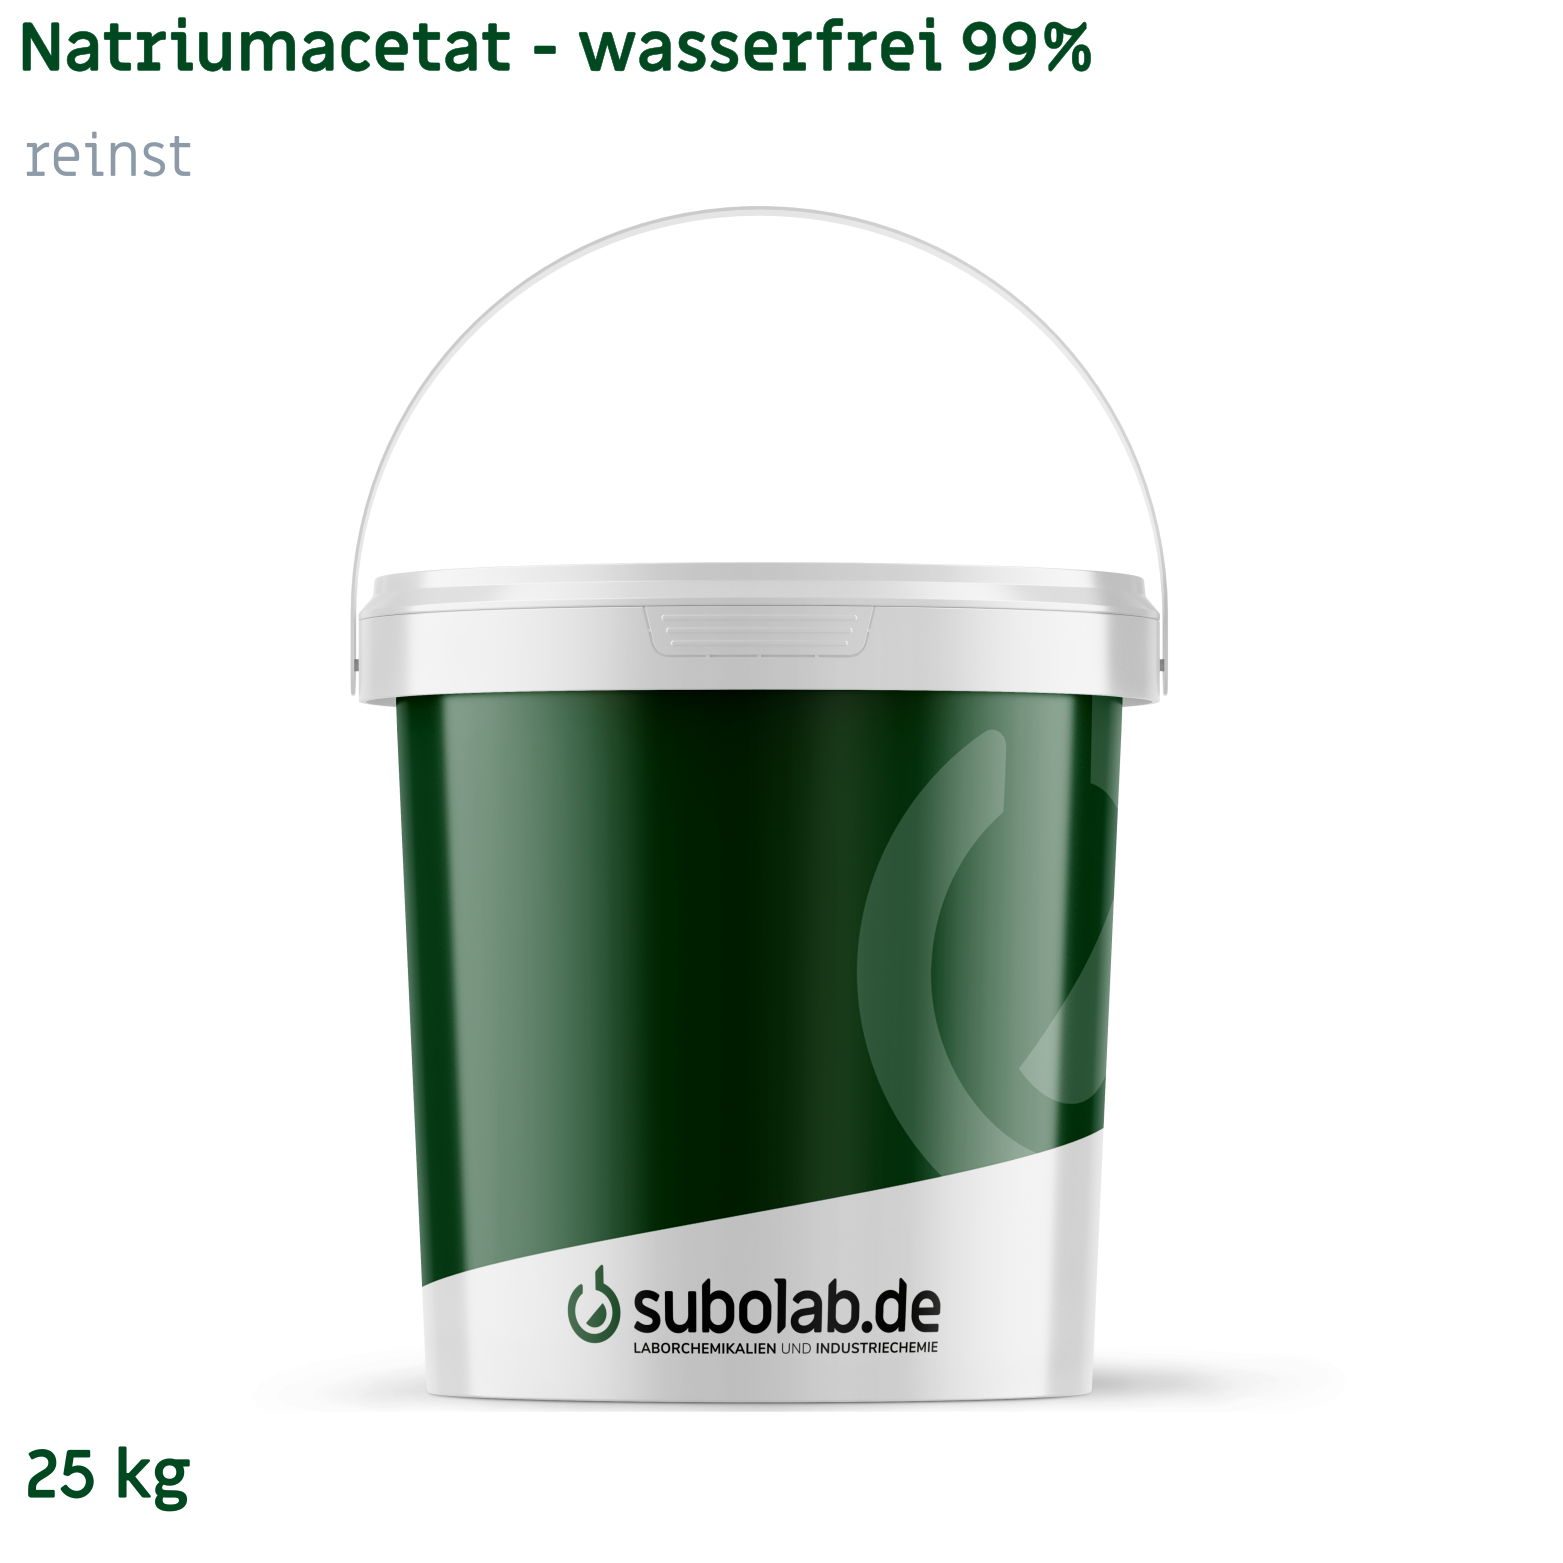 Bild von Natriumacetat - wasserfrei 99% reinst (25 kg)